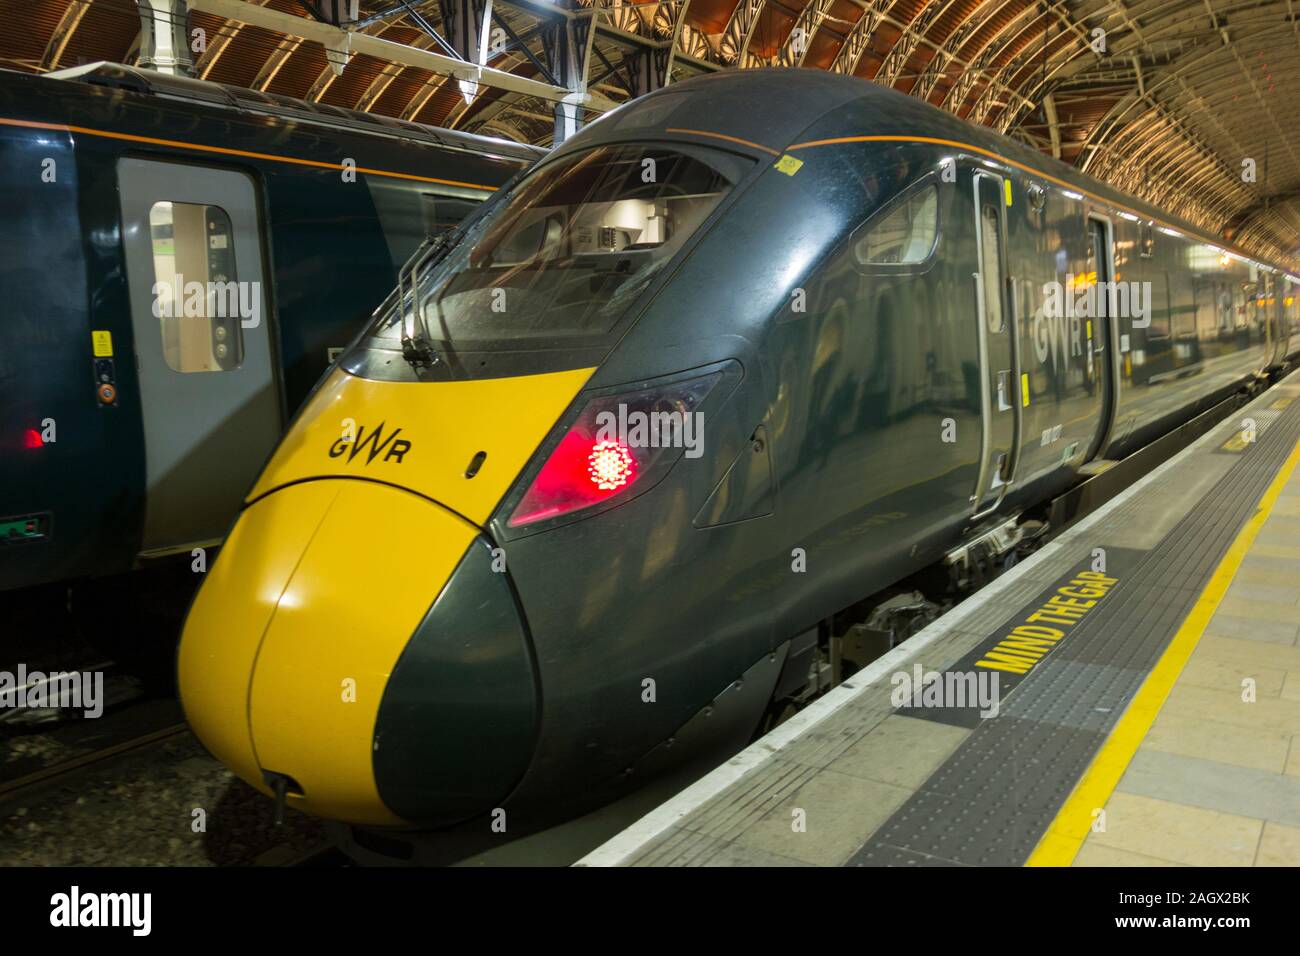 The windscreens of Hitachi Class 800 Intercity Express Trains at Paddington Station, London, UK Stock Photo